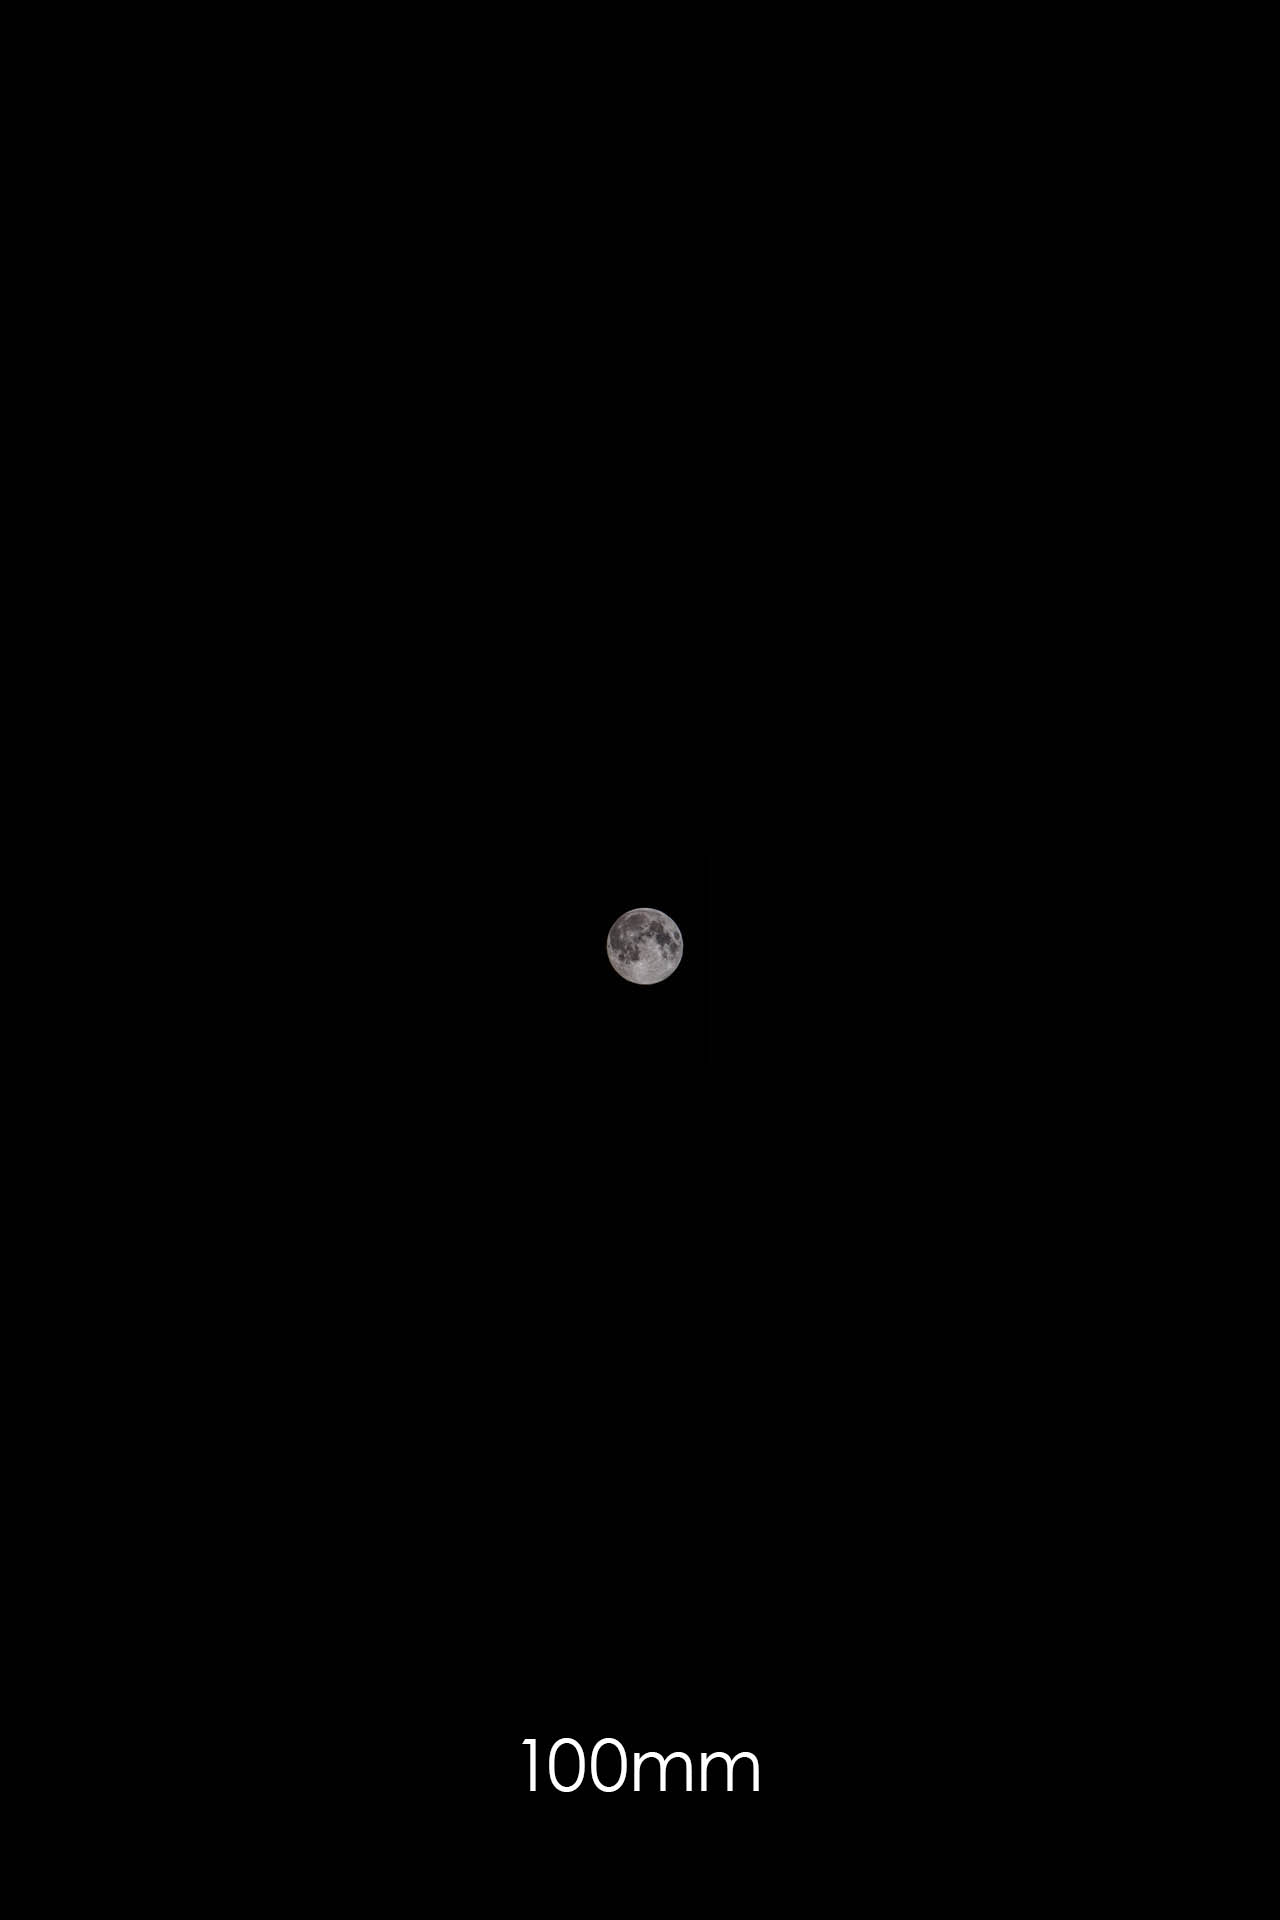 Mond mit 100mm Brennweite fotografiert